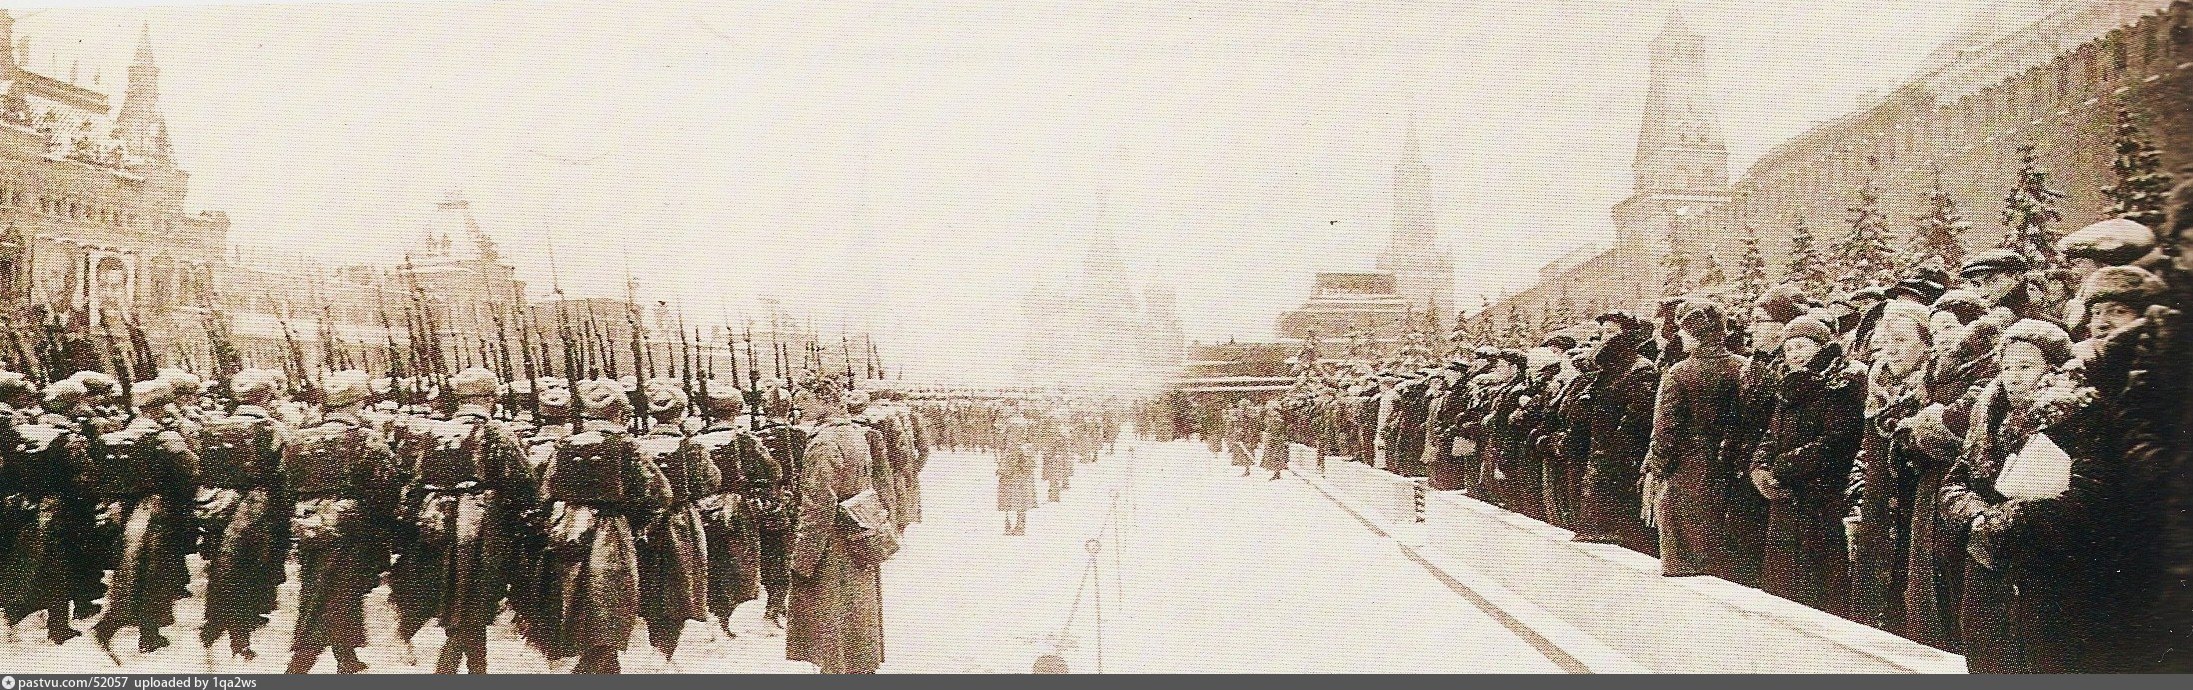 Где проходил парад в ноябре 1941. Парад 7 ноября 1941. Военный парад 7 ноября 1941 года в Москве на красной площади. Парад 7 ноября 1941 г на красной площади в Москве. Парад на красной площади 1941 битва за Москву.